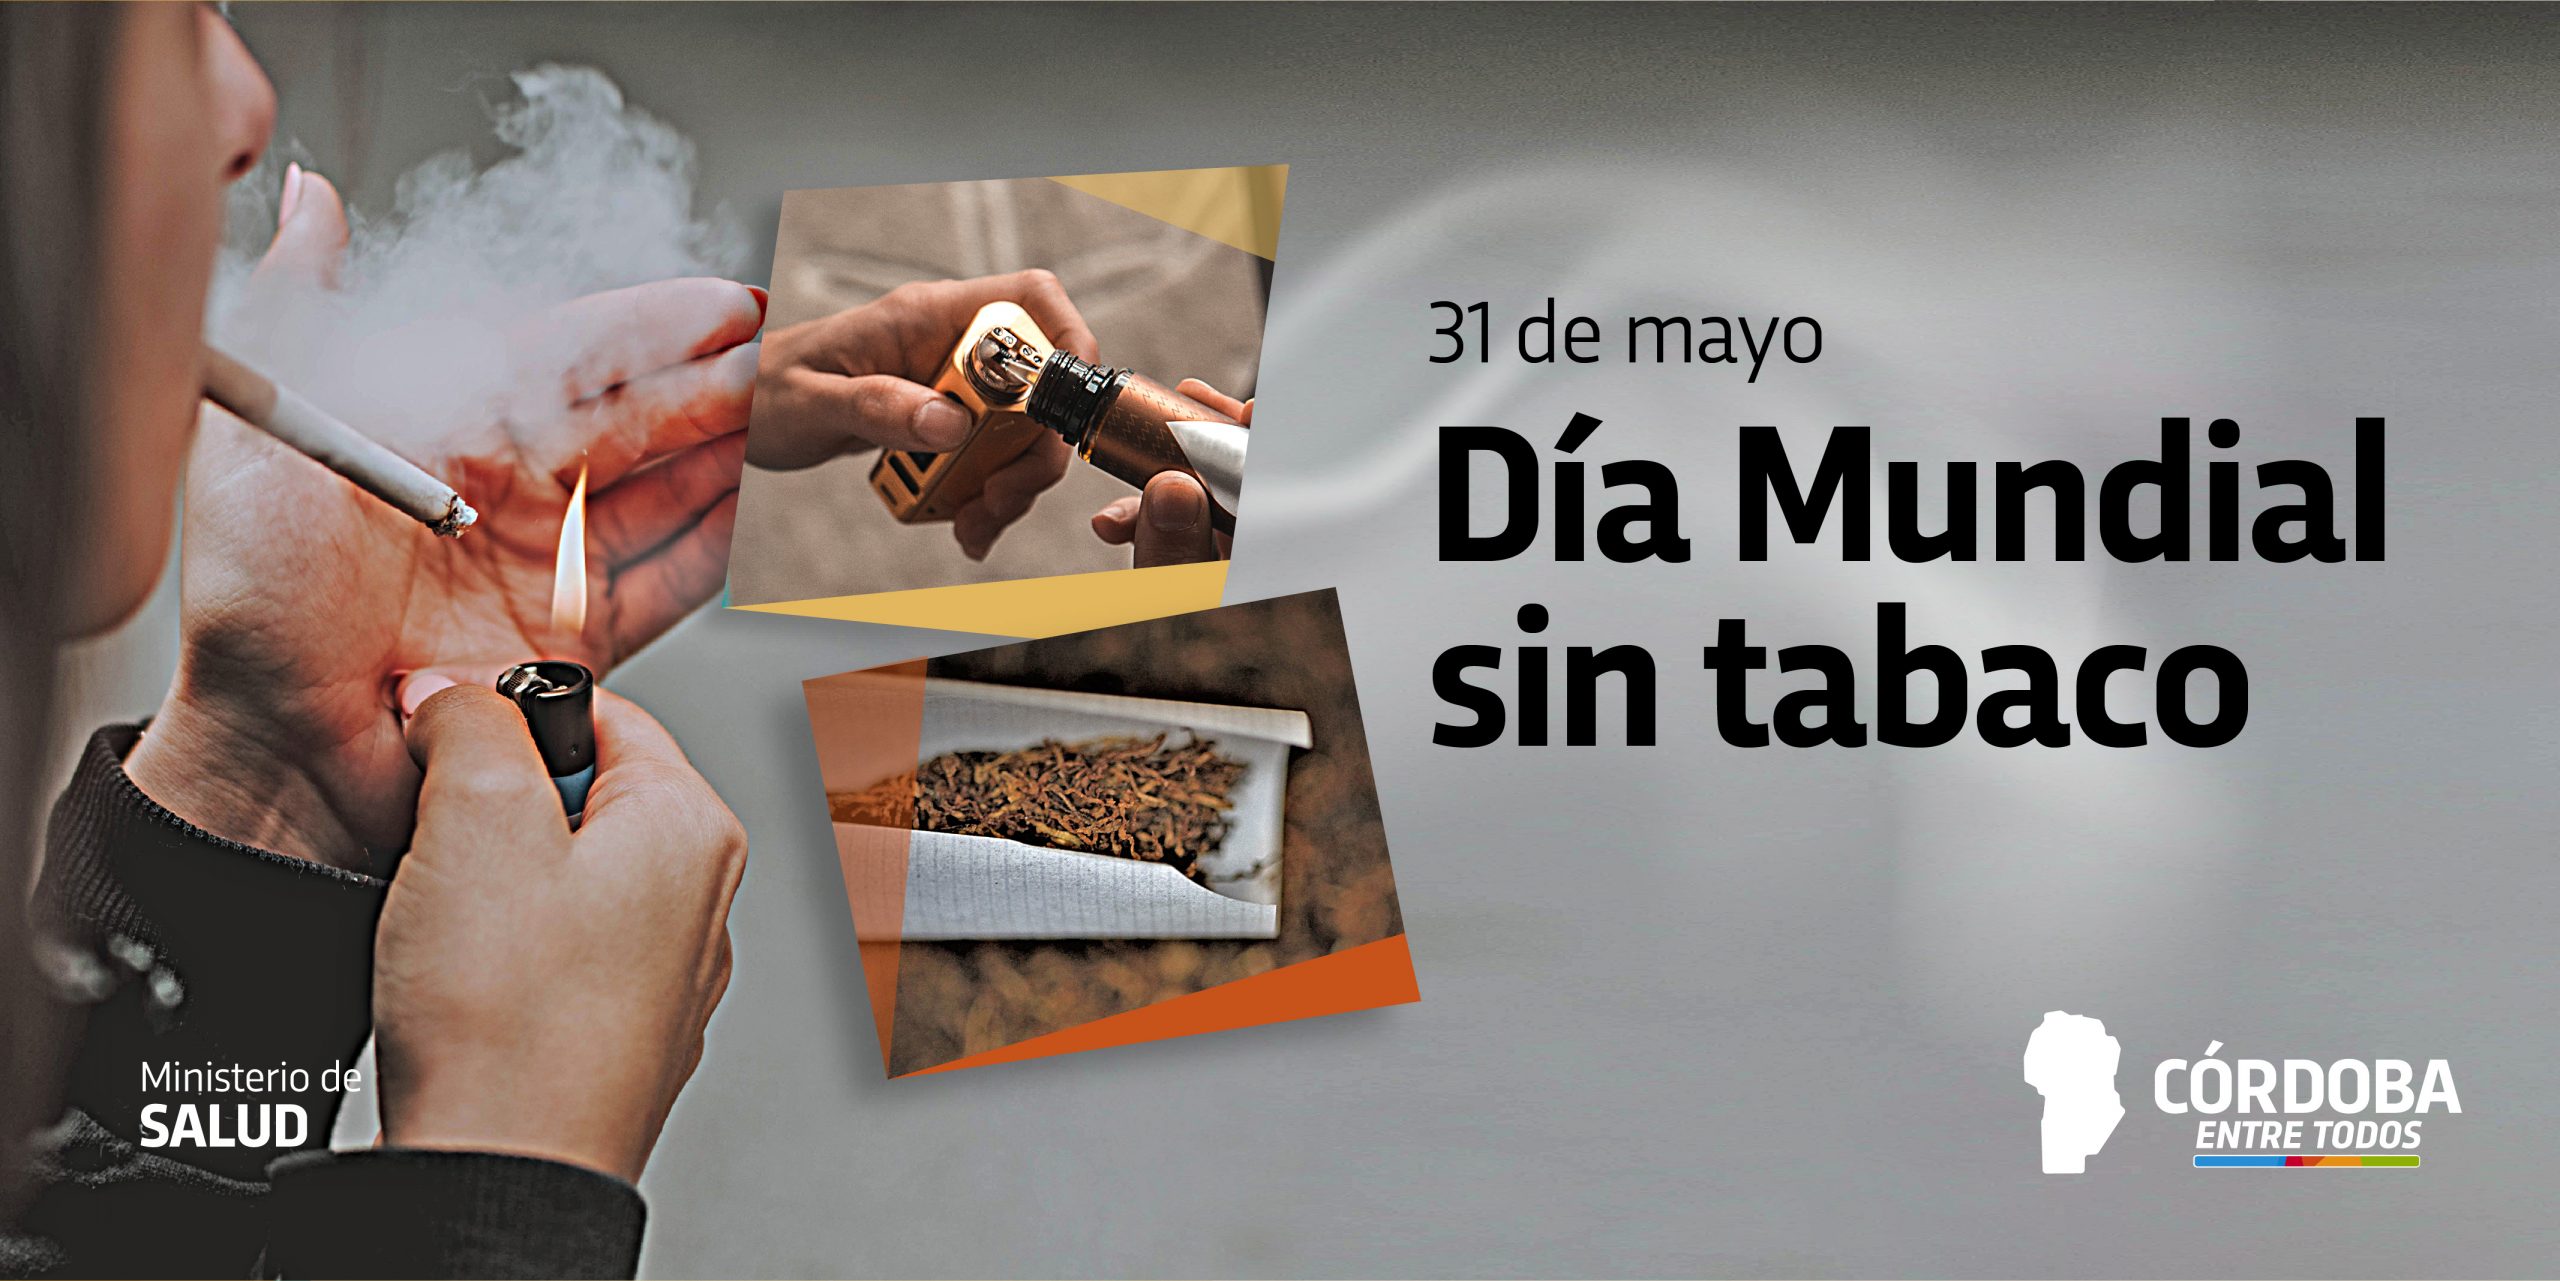 31 de mayo Día Mundial sin tabaco Web de Noticias Gobierno de Córdoba